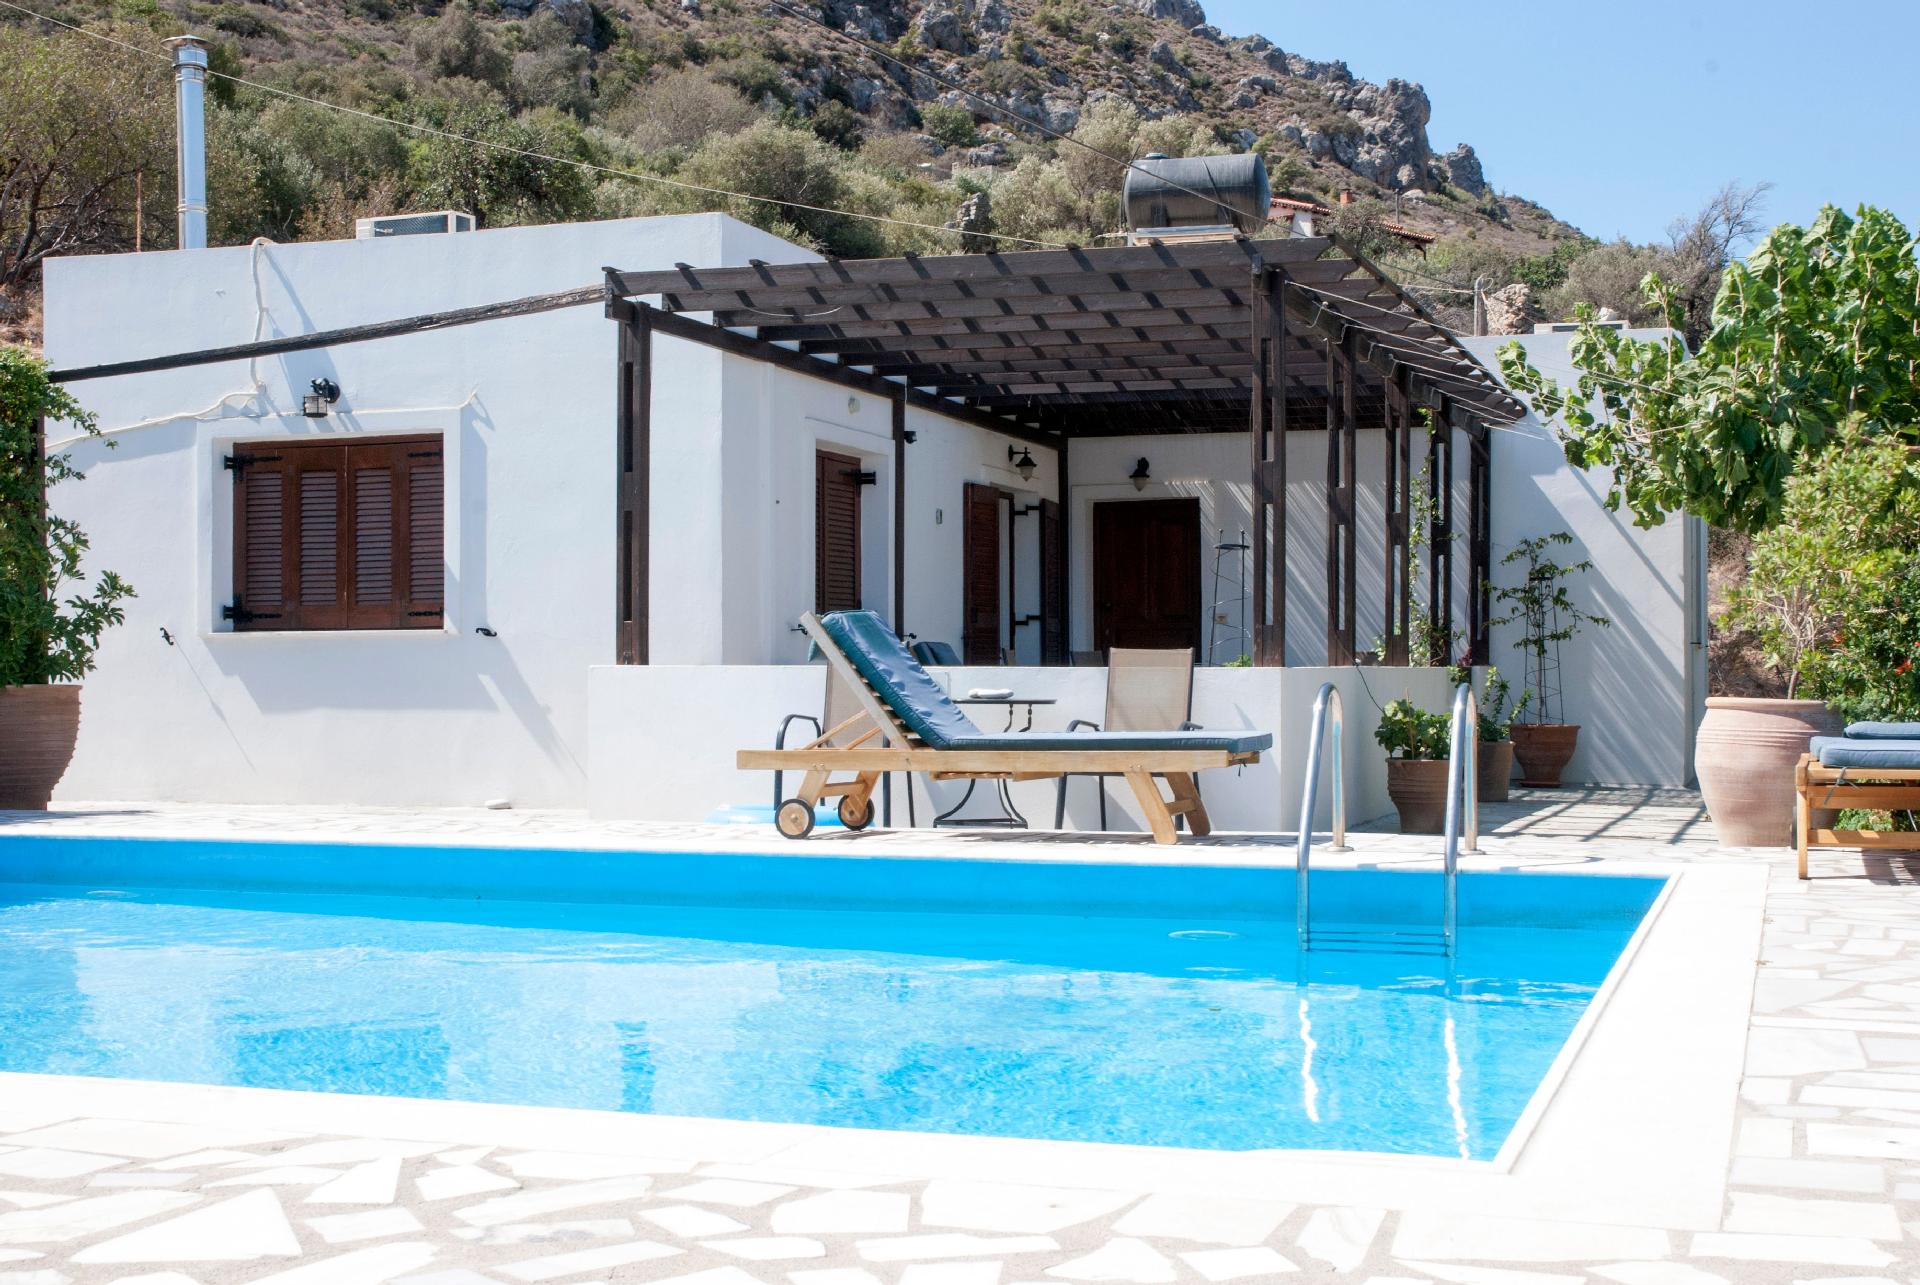 Ferienhaus mit Privatpool für 4 Personen ca.  Ferienhaus in Griechenland